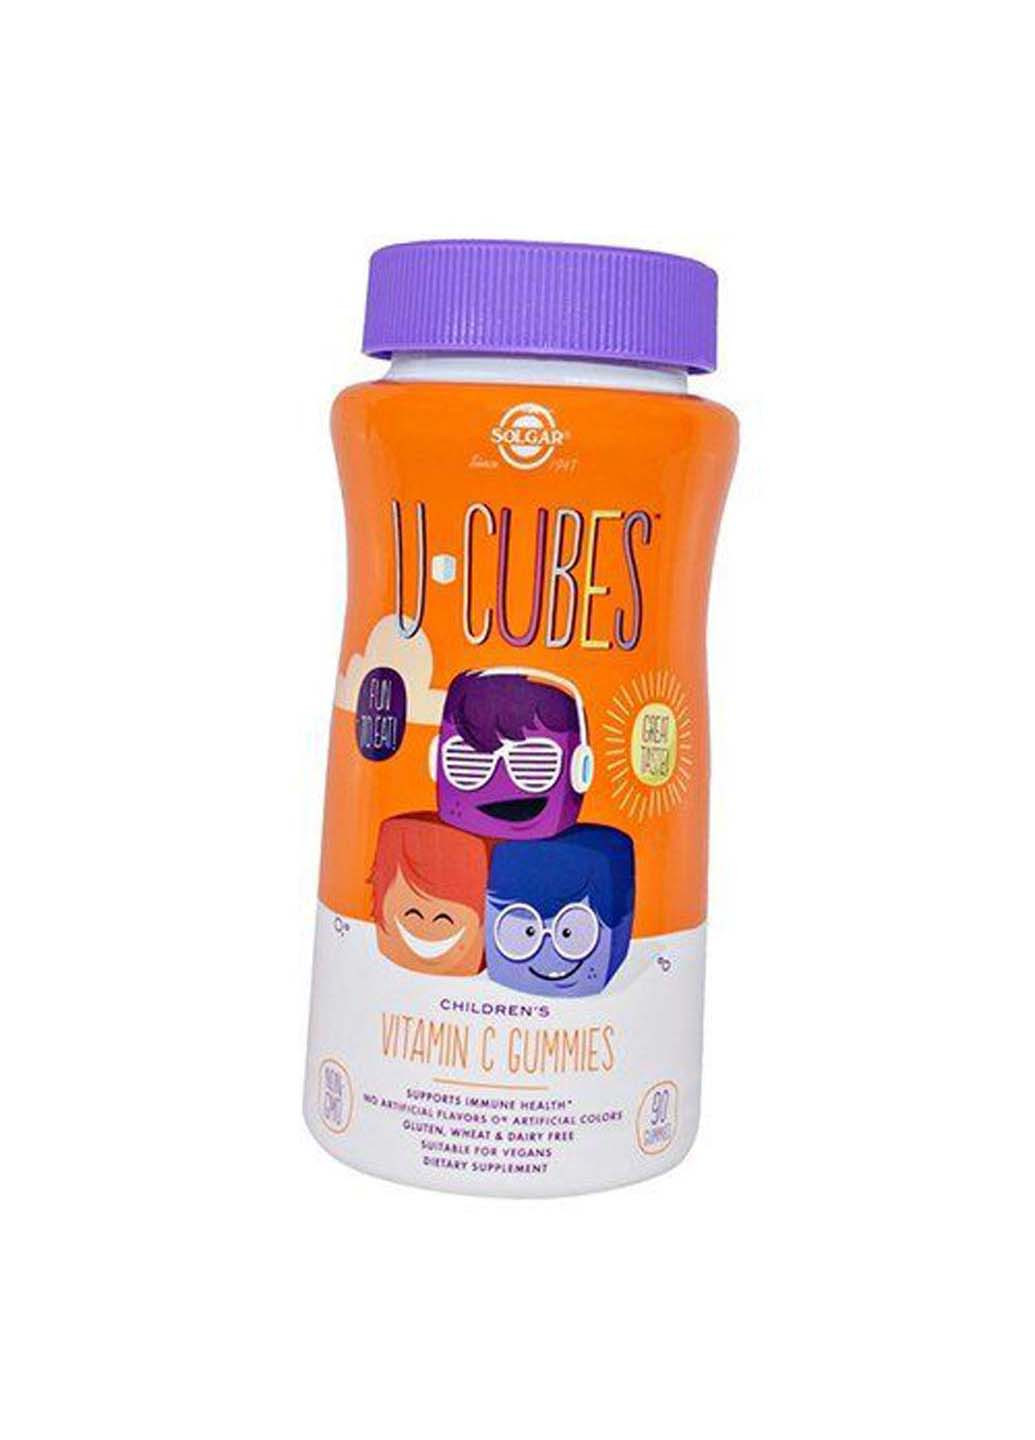 Жевательный Витамин С для детей U-Cubes Children's Vitamin C Gummies 90таб Клубника-апельсин Solgar (275469441)